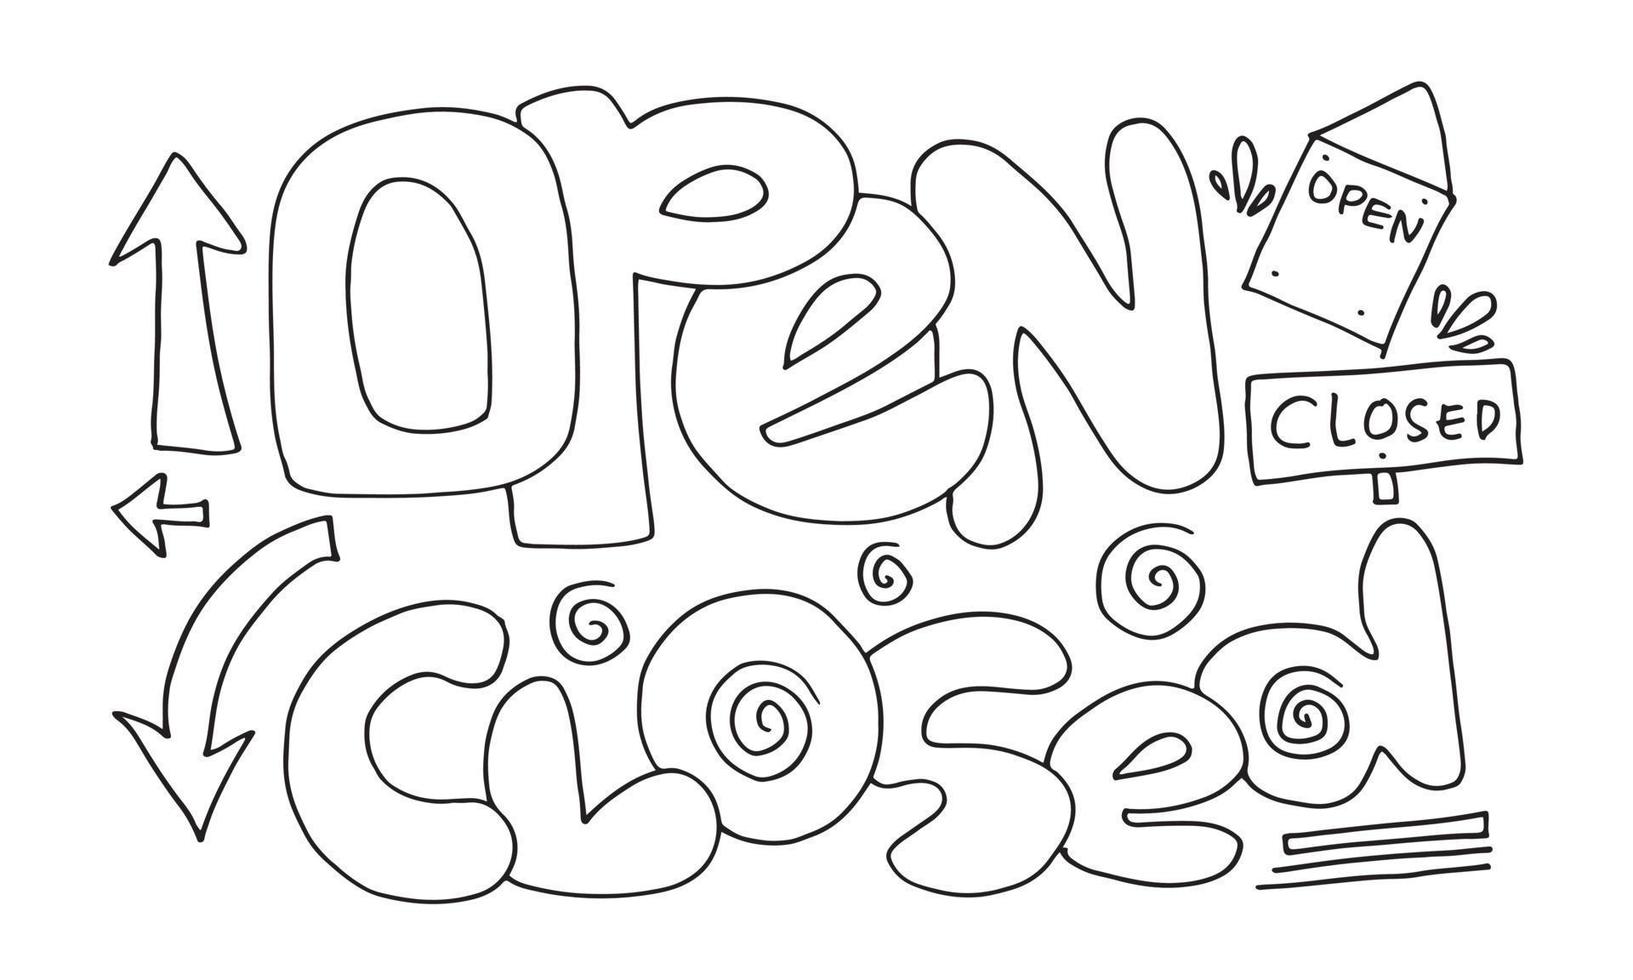 signo abierto cerrado. para uso en cafés, edificios, tiendas y otros vector